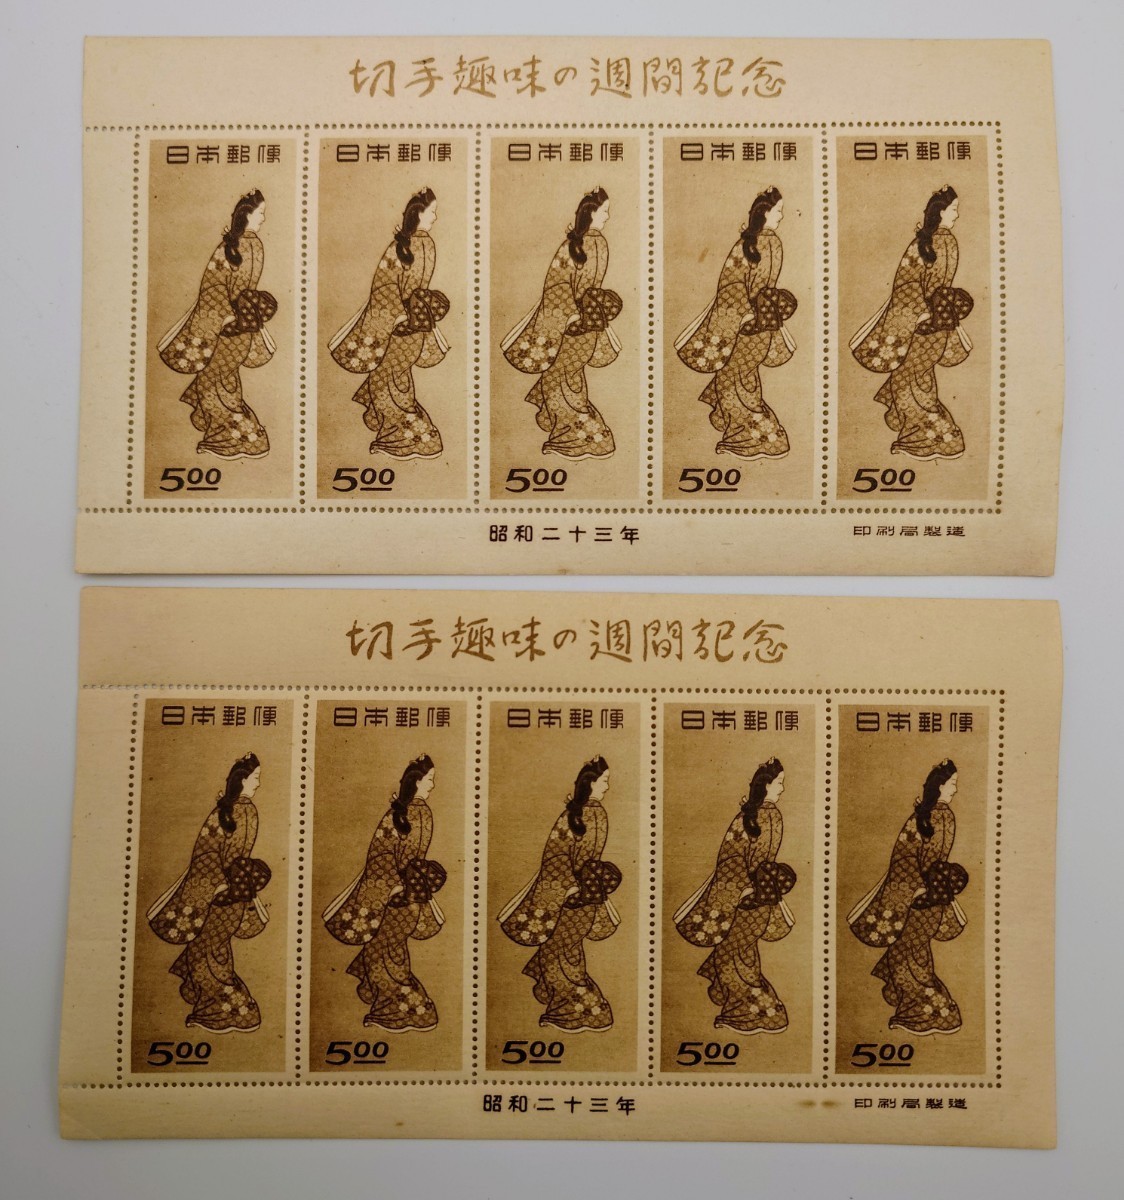 切手趣味週間 見返り美人切手シート 名版つき - 使用済切手/官製はがき